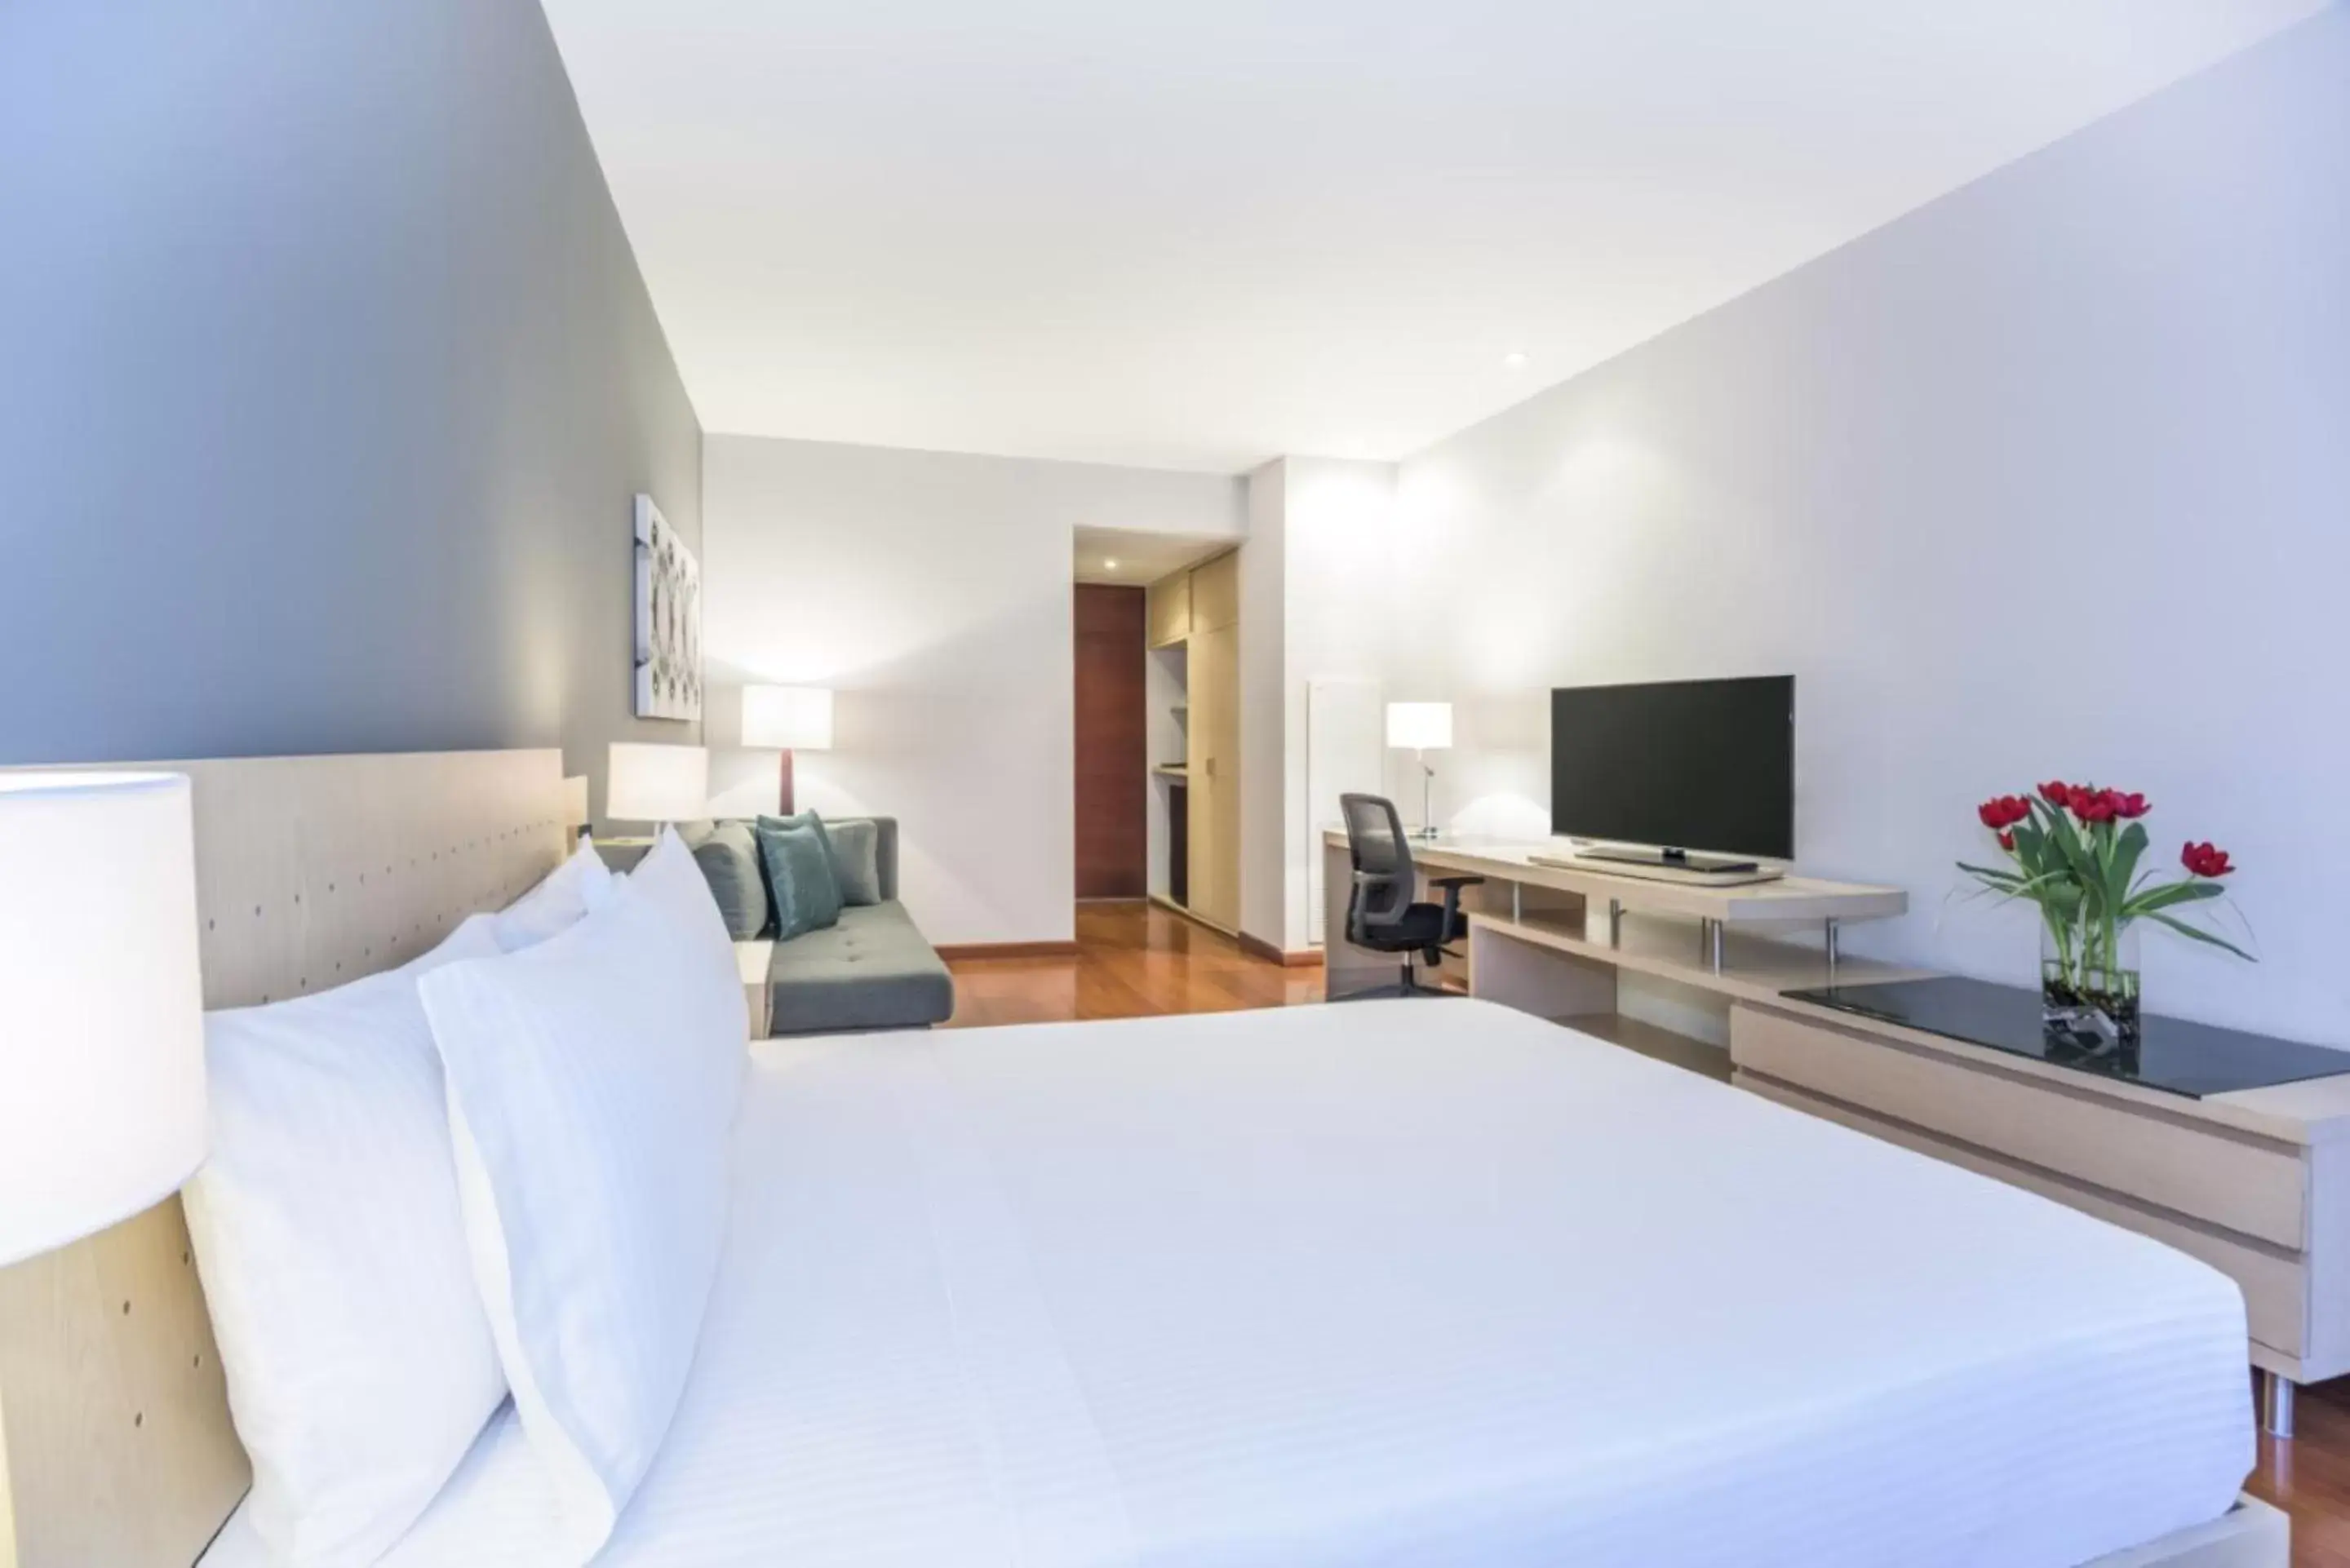 Bedroom, Bed in Cosmos 100 Hotel & Centro de Convenciones - Hoteles Cosmos